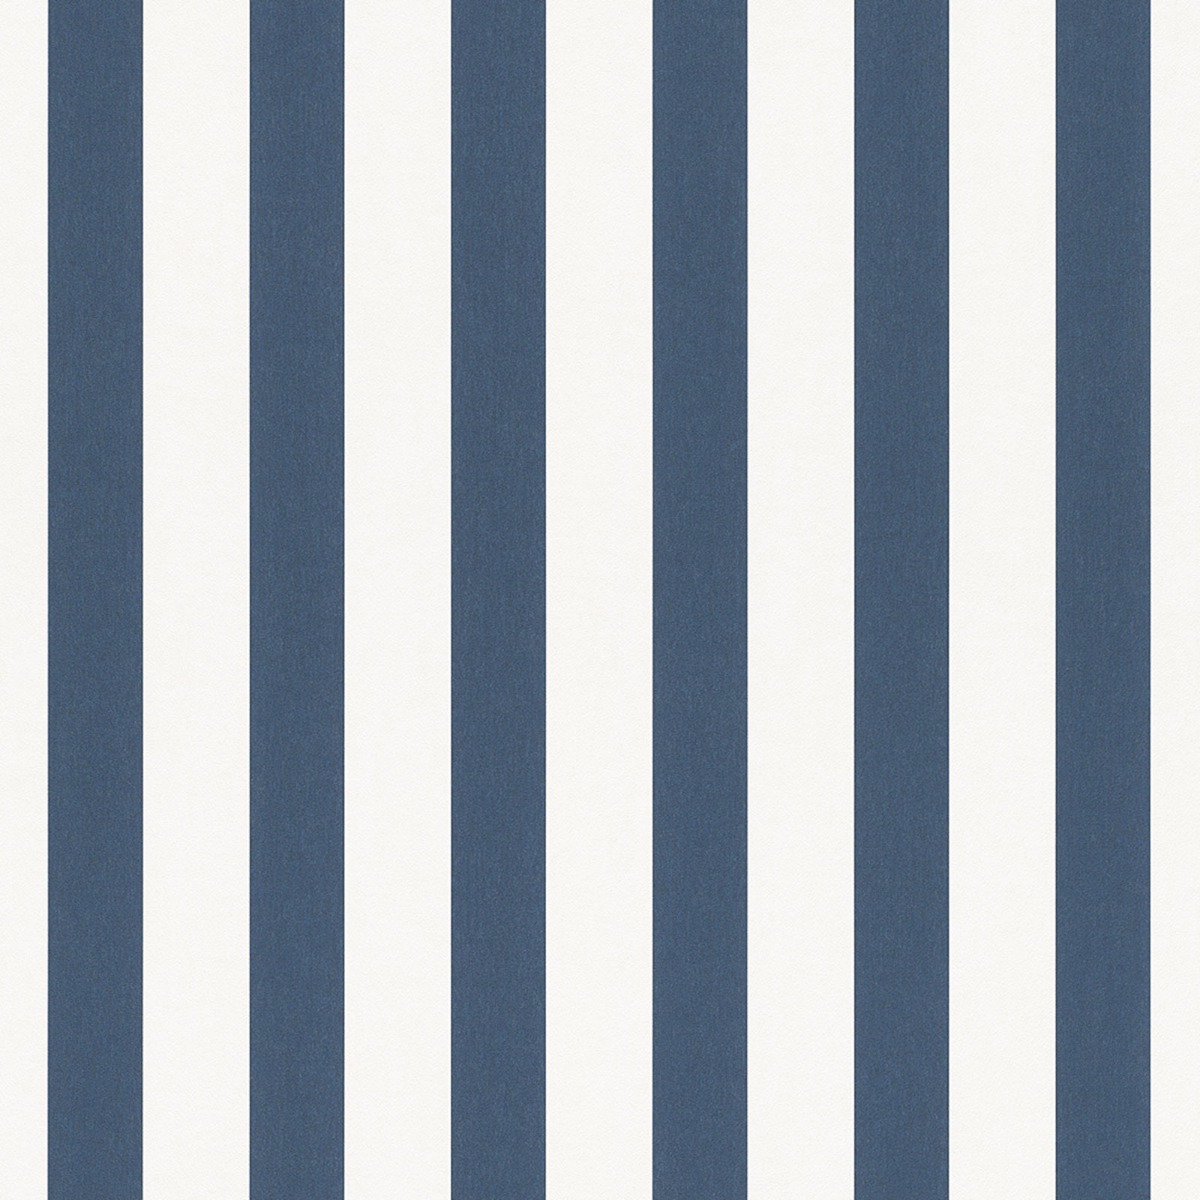 Bambino XVIII Narrow Stripe Wallpaper Navy White Rasch 246049 New